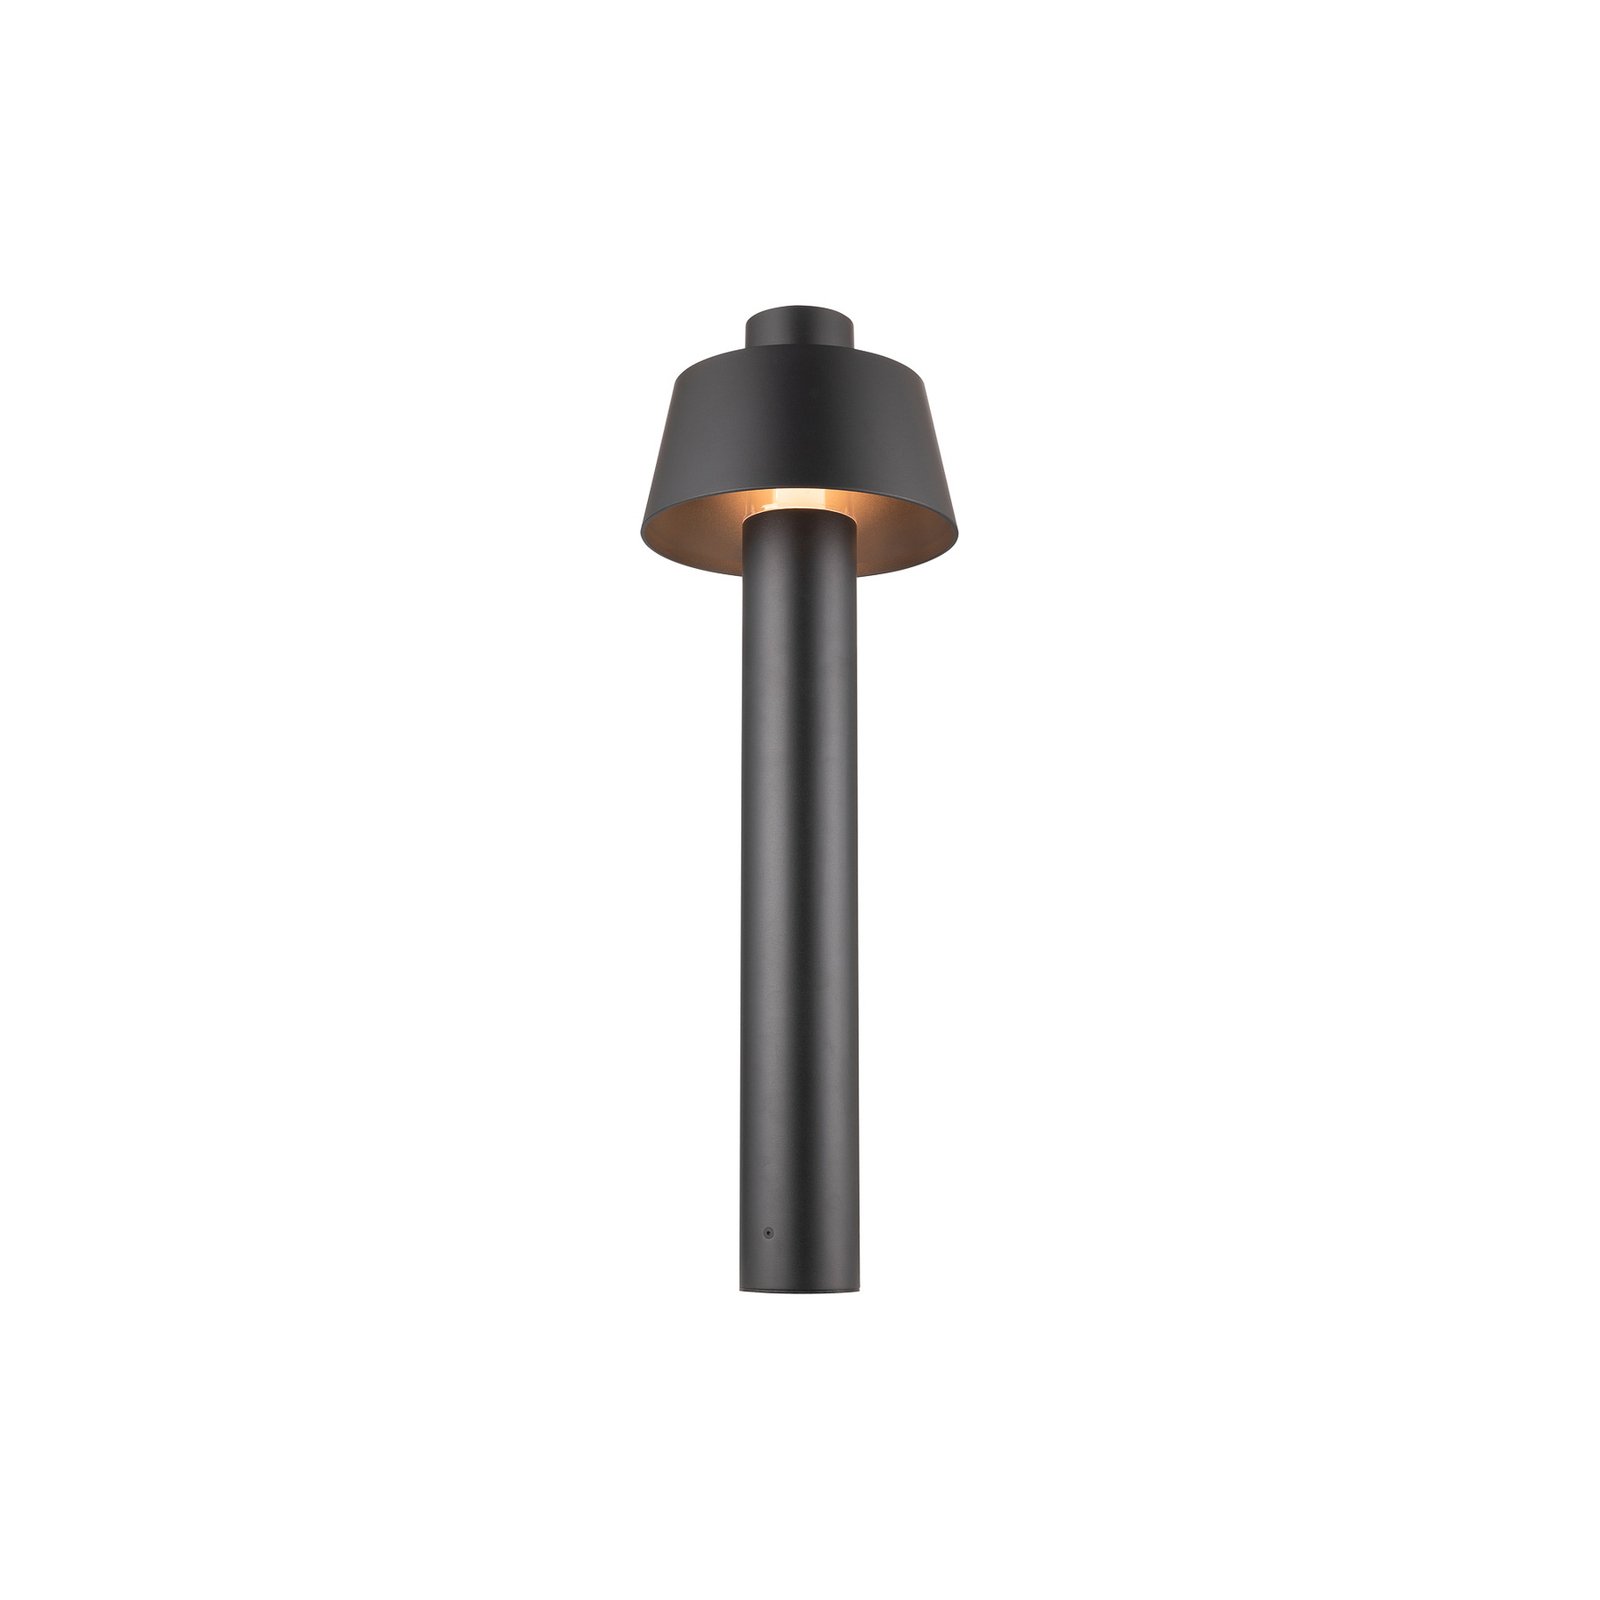 SLV putna svjetiljka Photoni 75, crna, aluminij, visina 75 cm